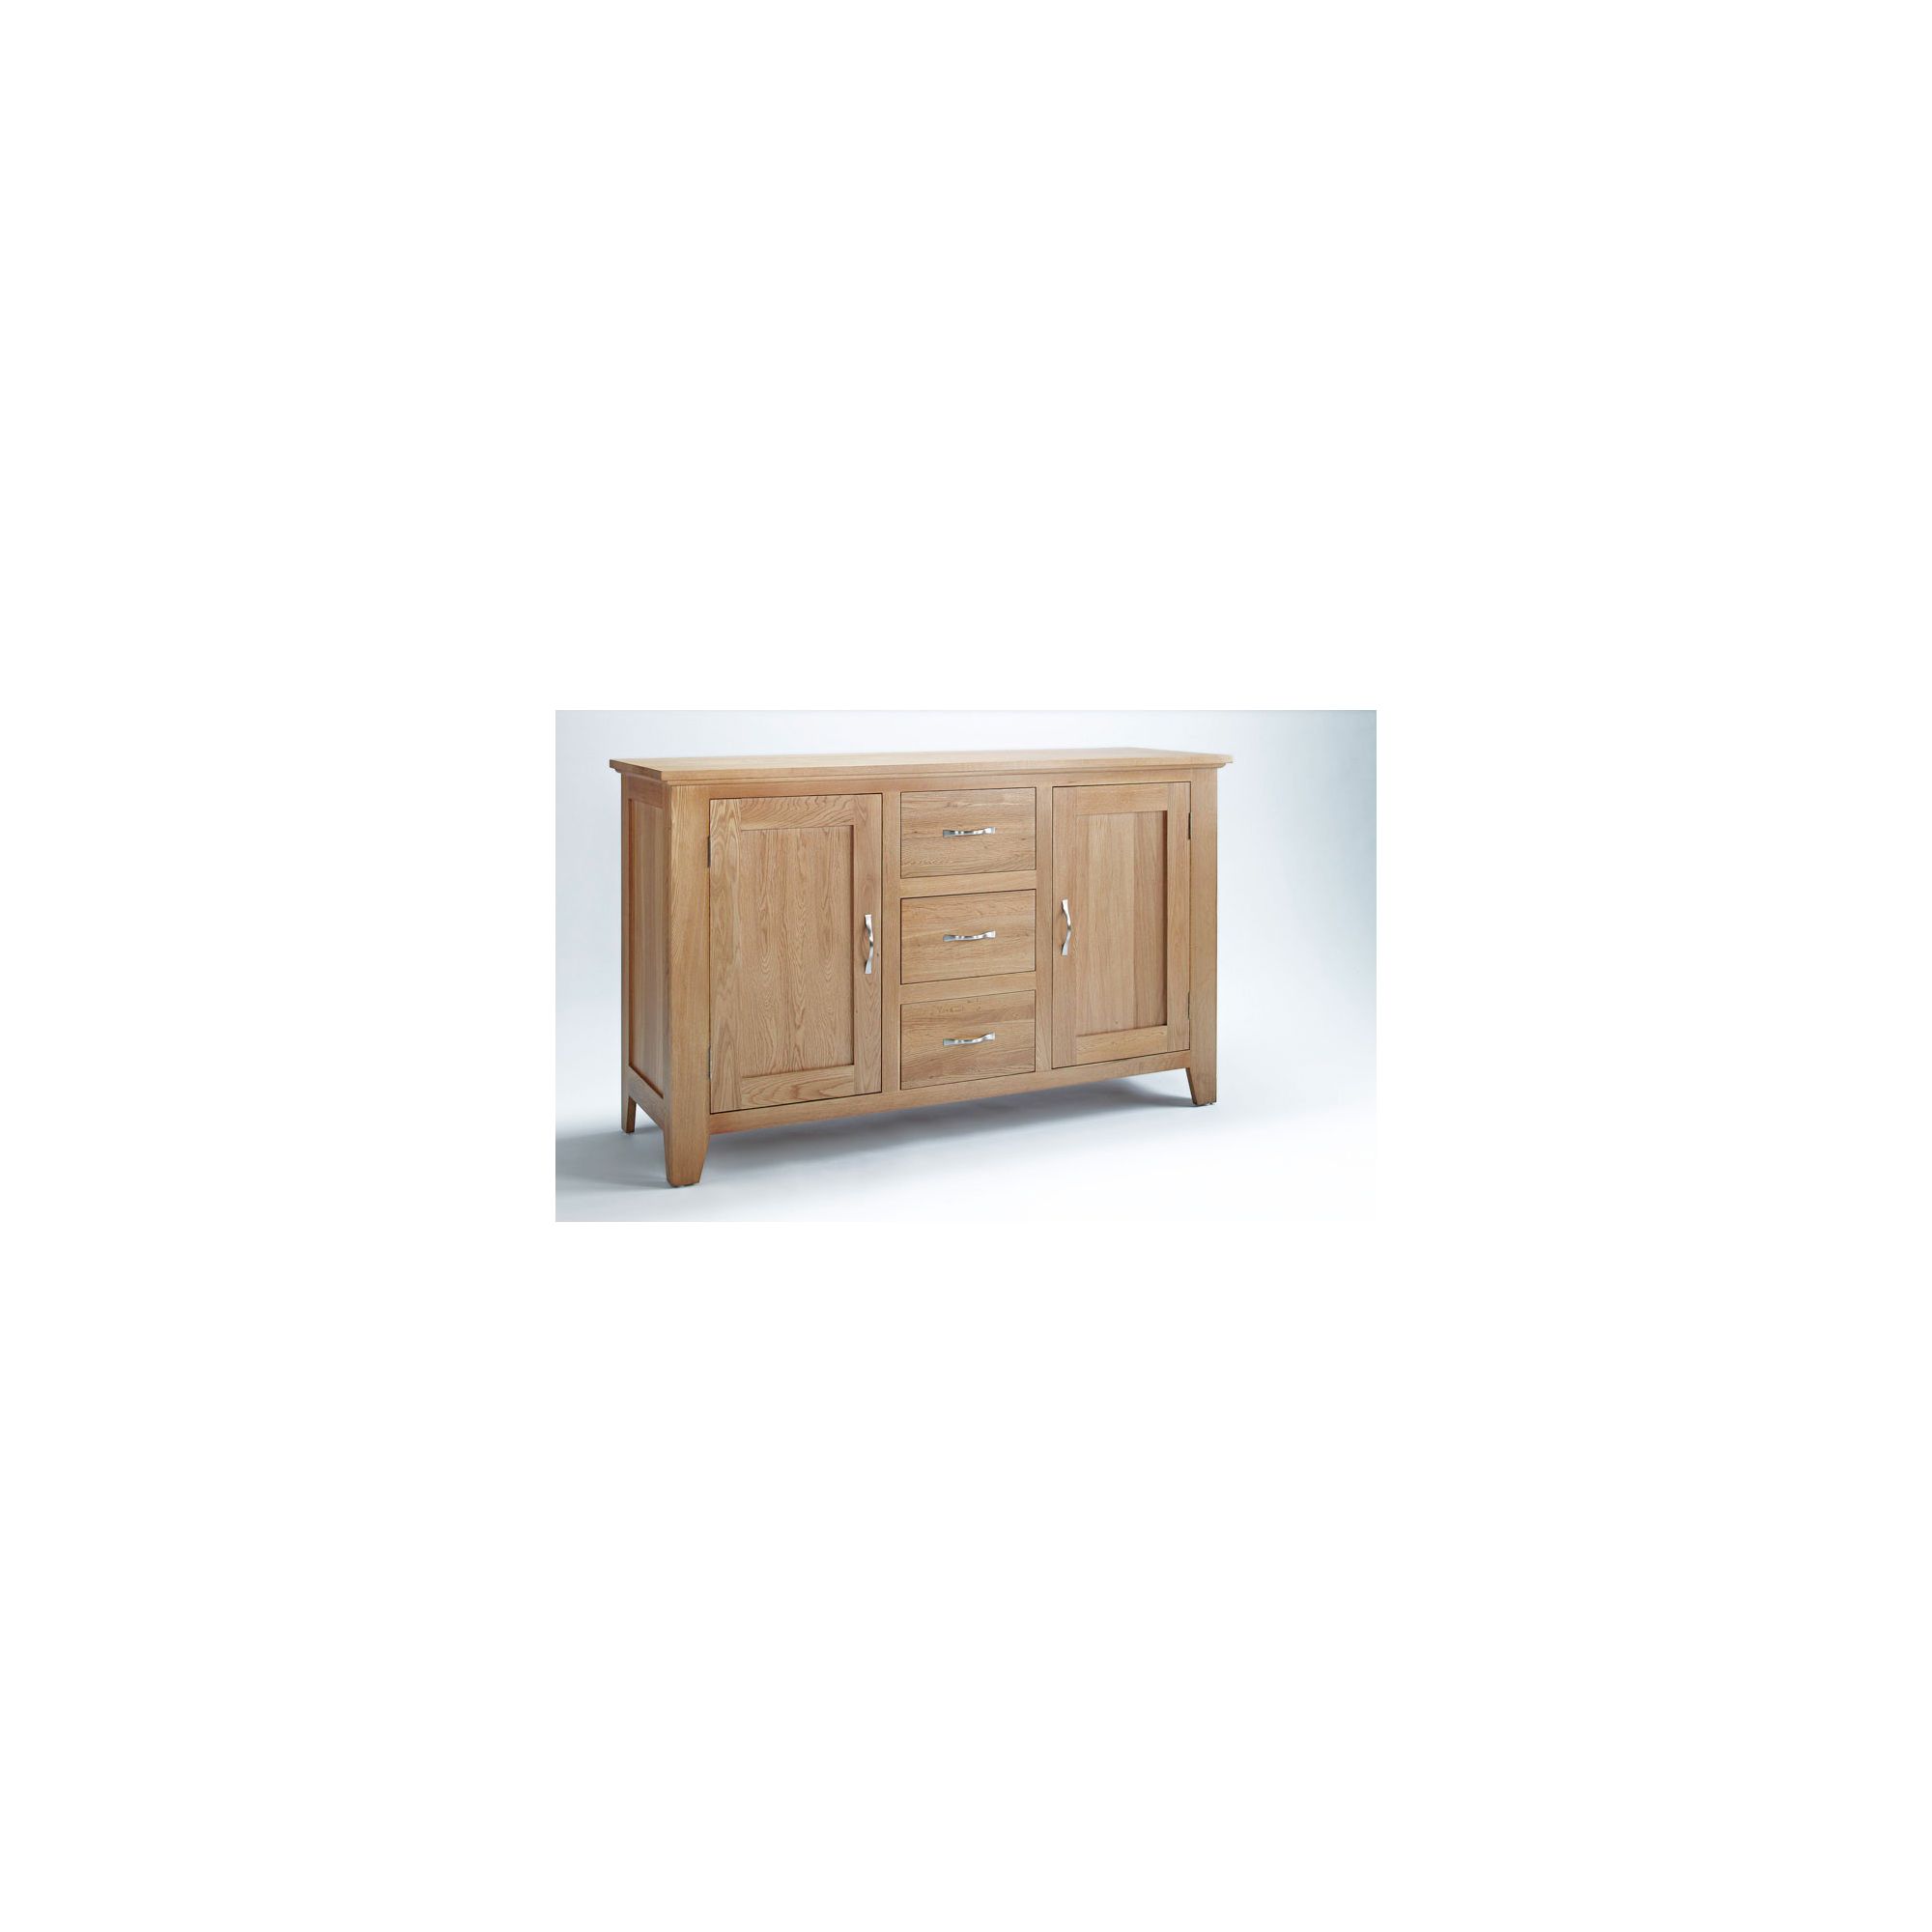 Ametis Sherwood Oak Three Drawer Sideboard at Tesco Direct